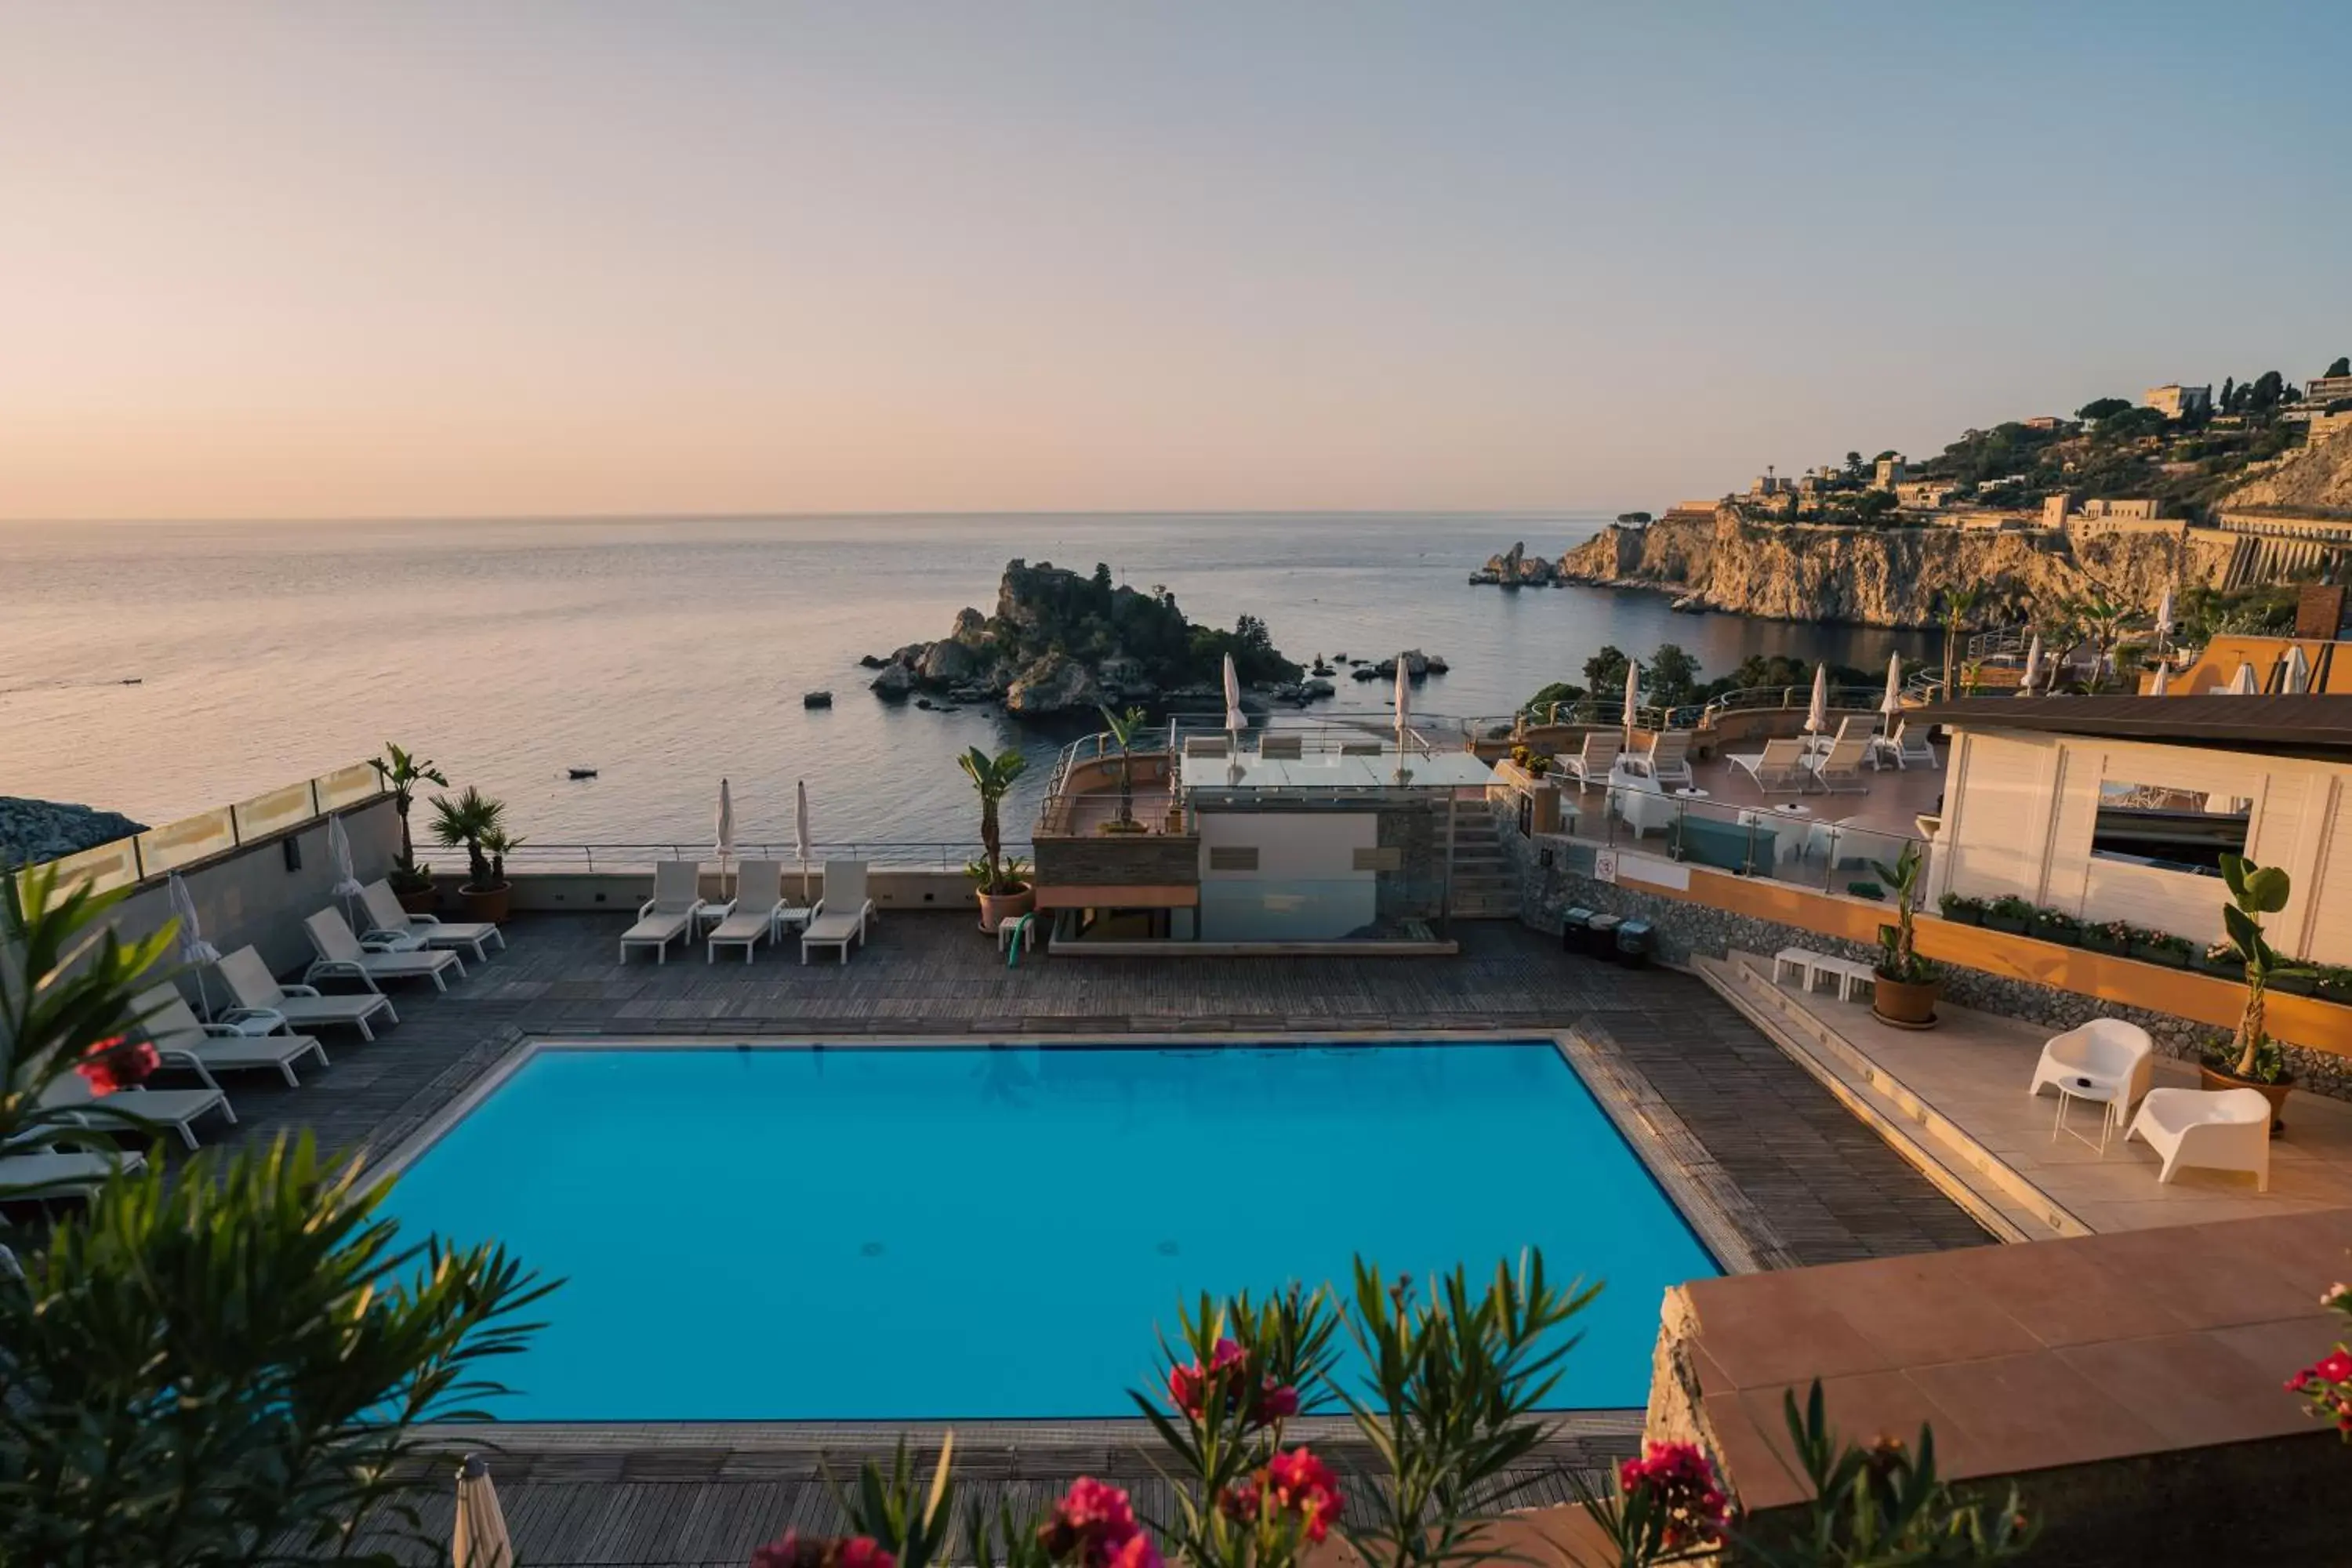 Swimming pool, Pool View in Taormina Panoramic Hotel